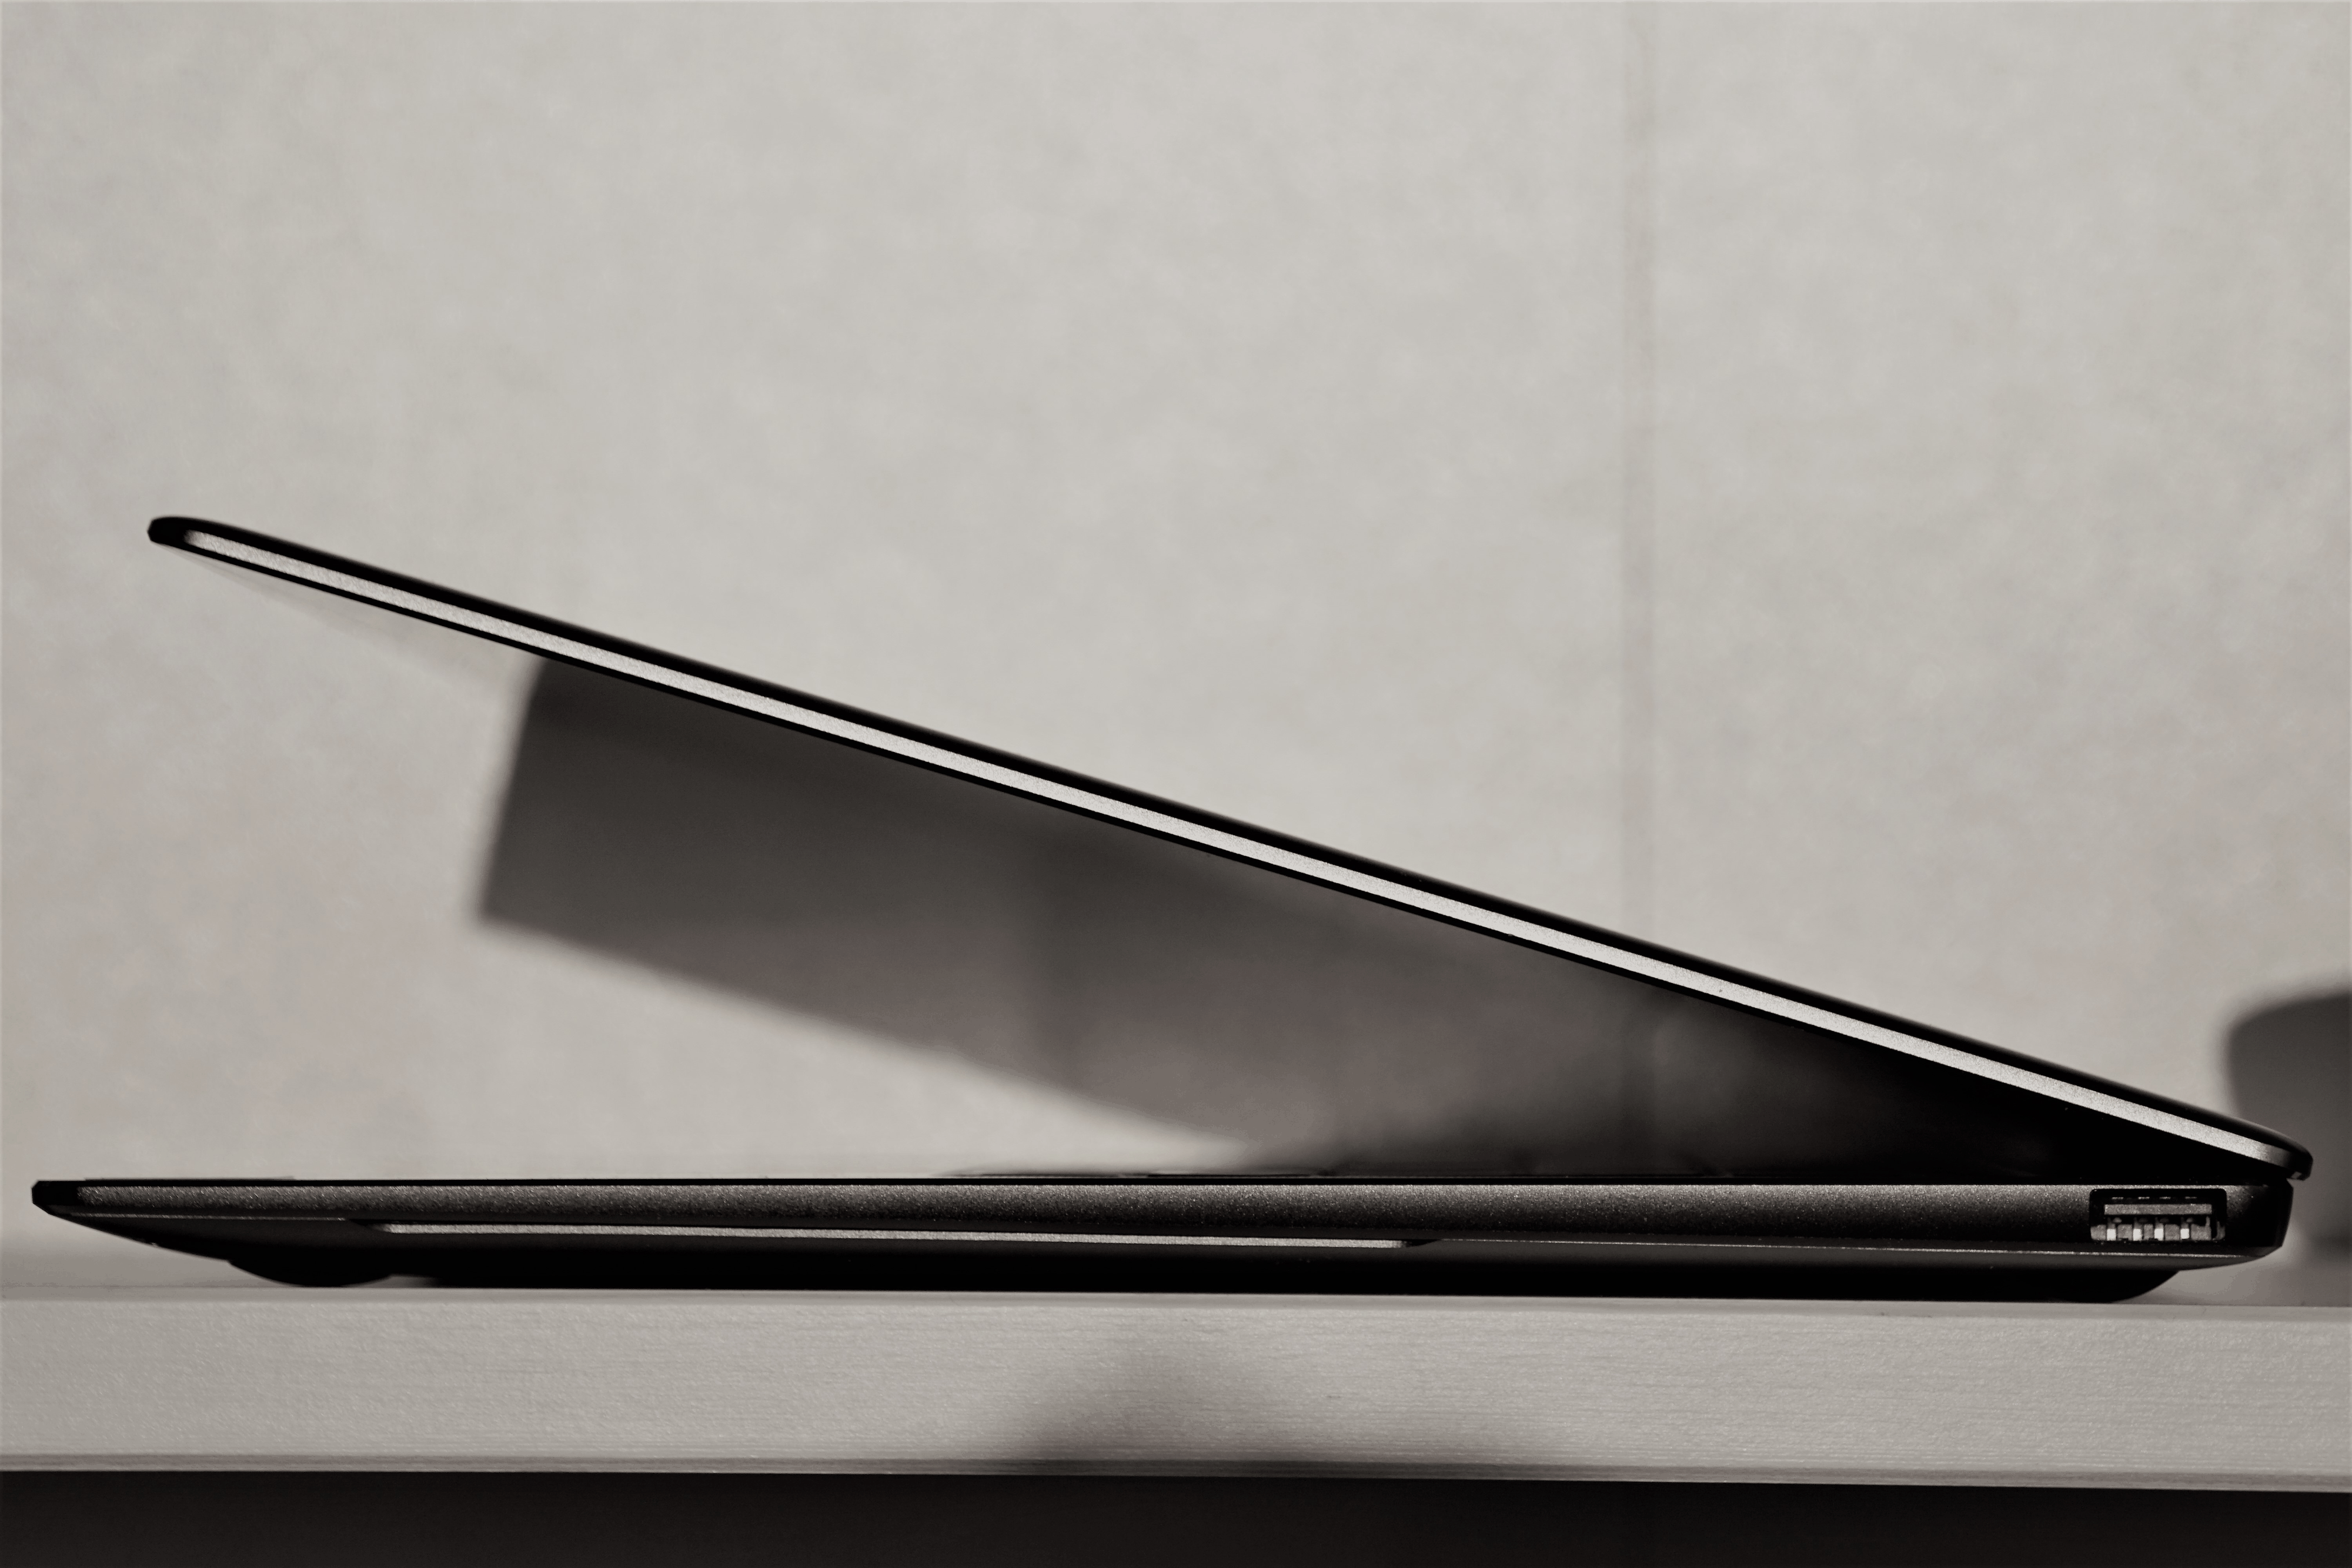 Das MateBook X Pro im Metall-Look ist elegant, von A bis Z durchgestylt und die Verarbeitung tadellos.